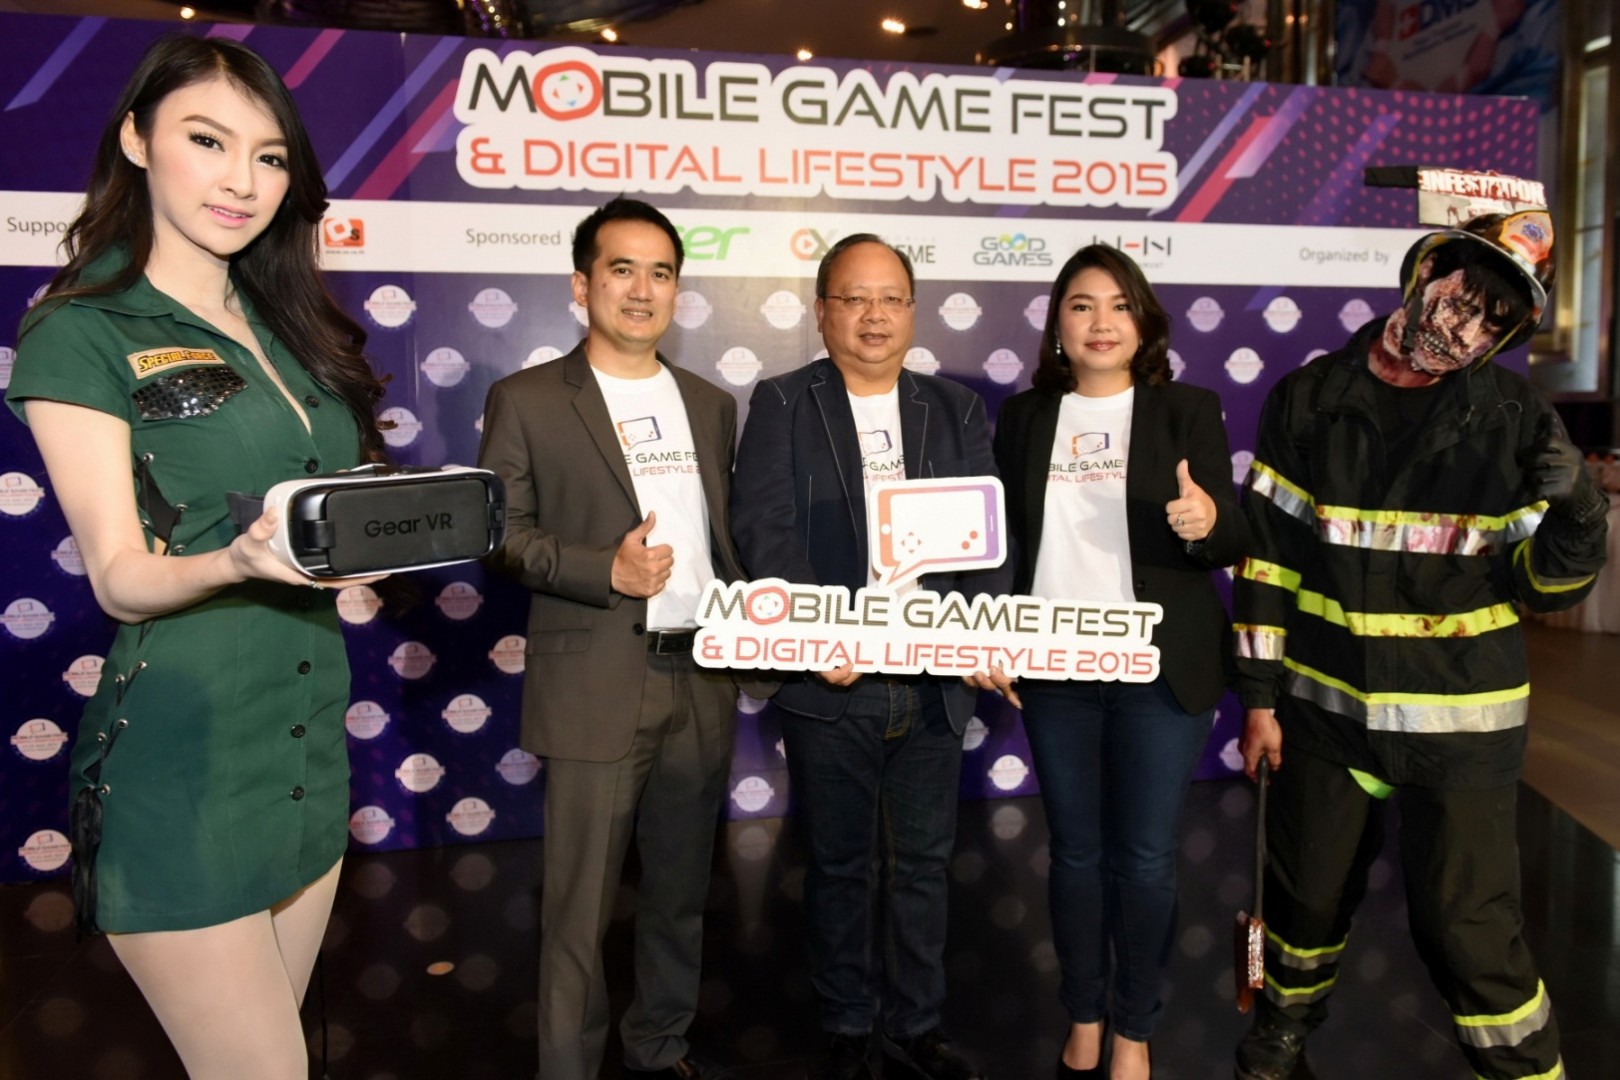 สั่นสะเทือนวงการเกมมือถือกับงาน “MOBILE GAME FEST & DIGITAL LIFESTYLE 2015”